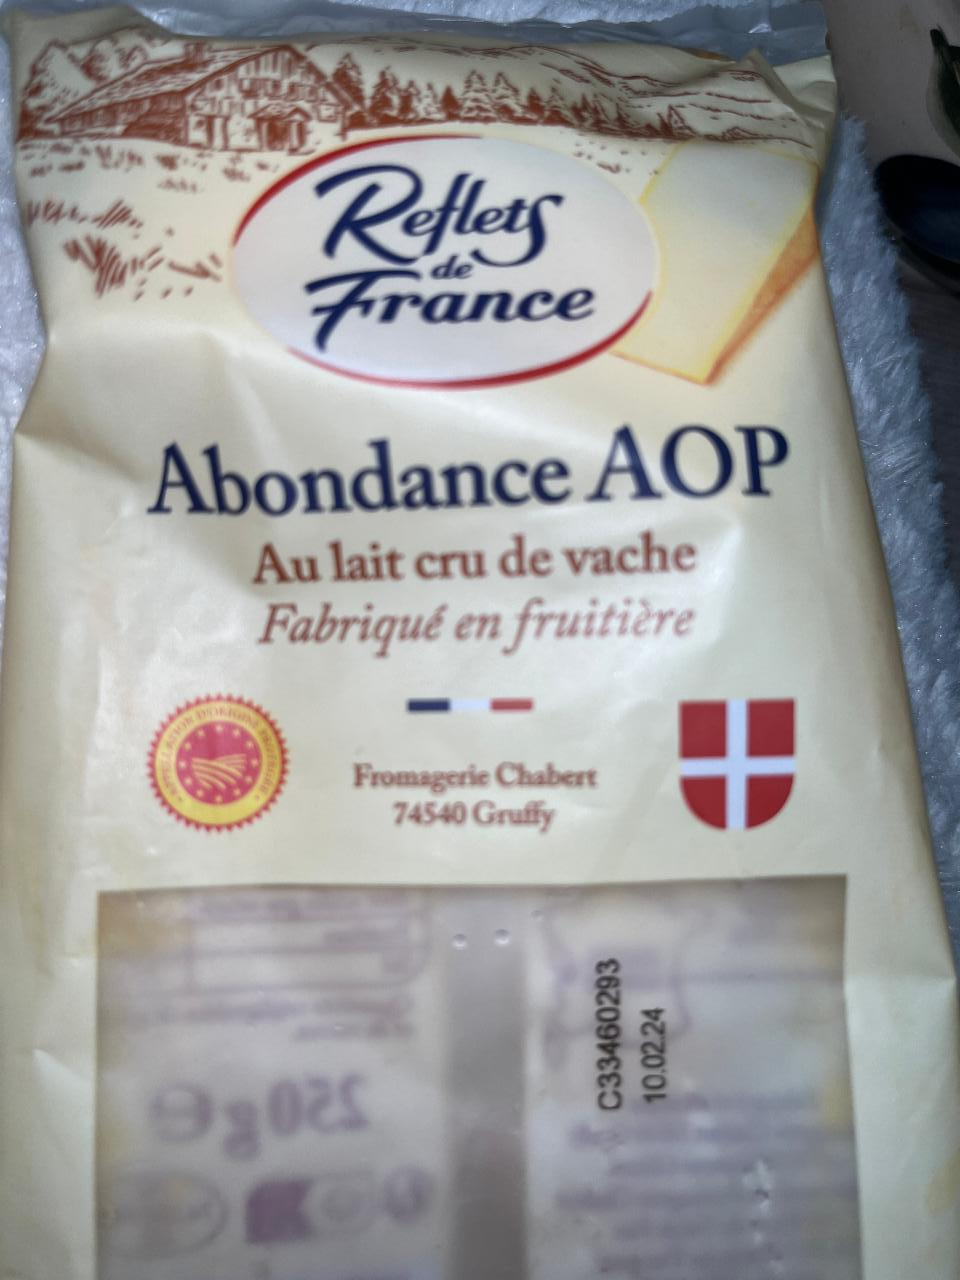 Fotografie - Abondance AOP au lait cru de vache Reflets de France